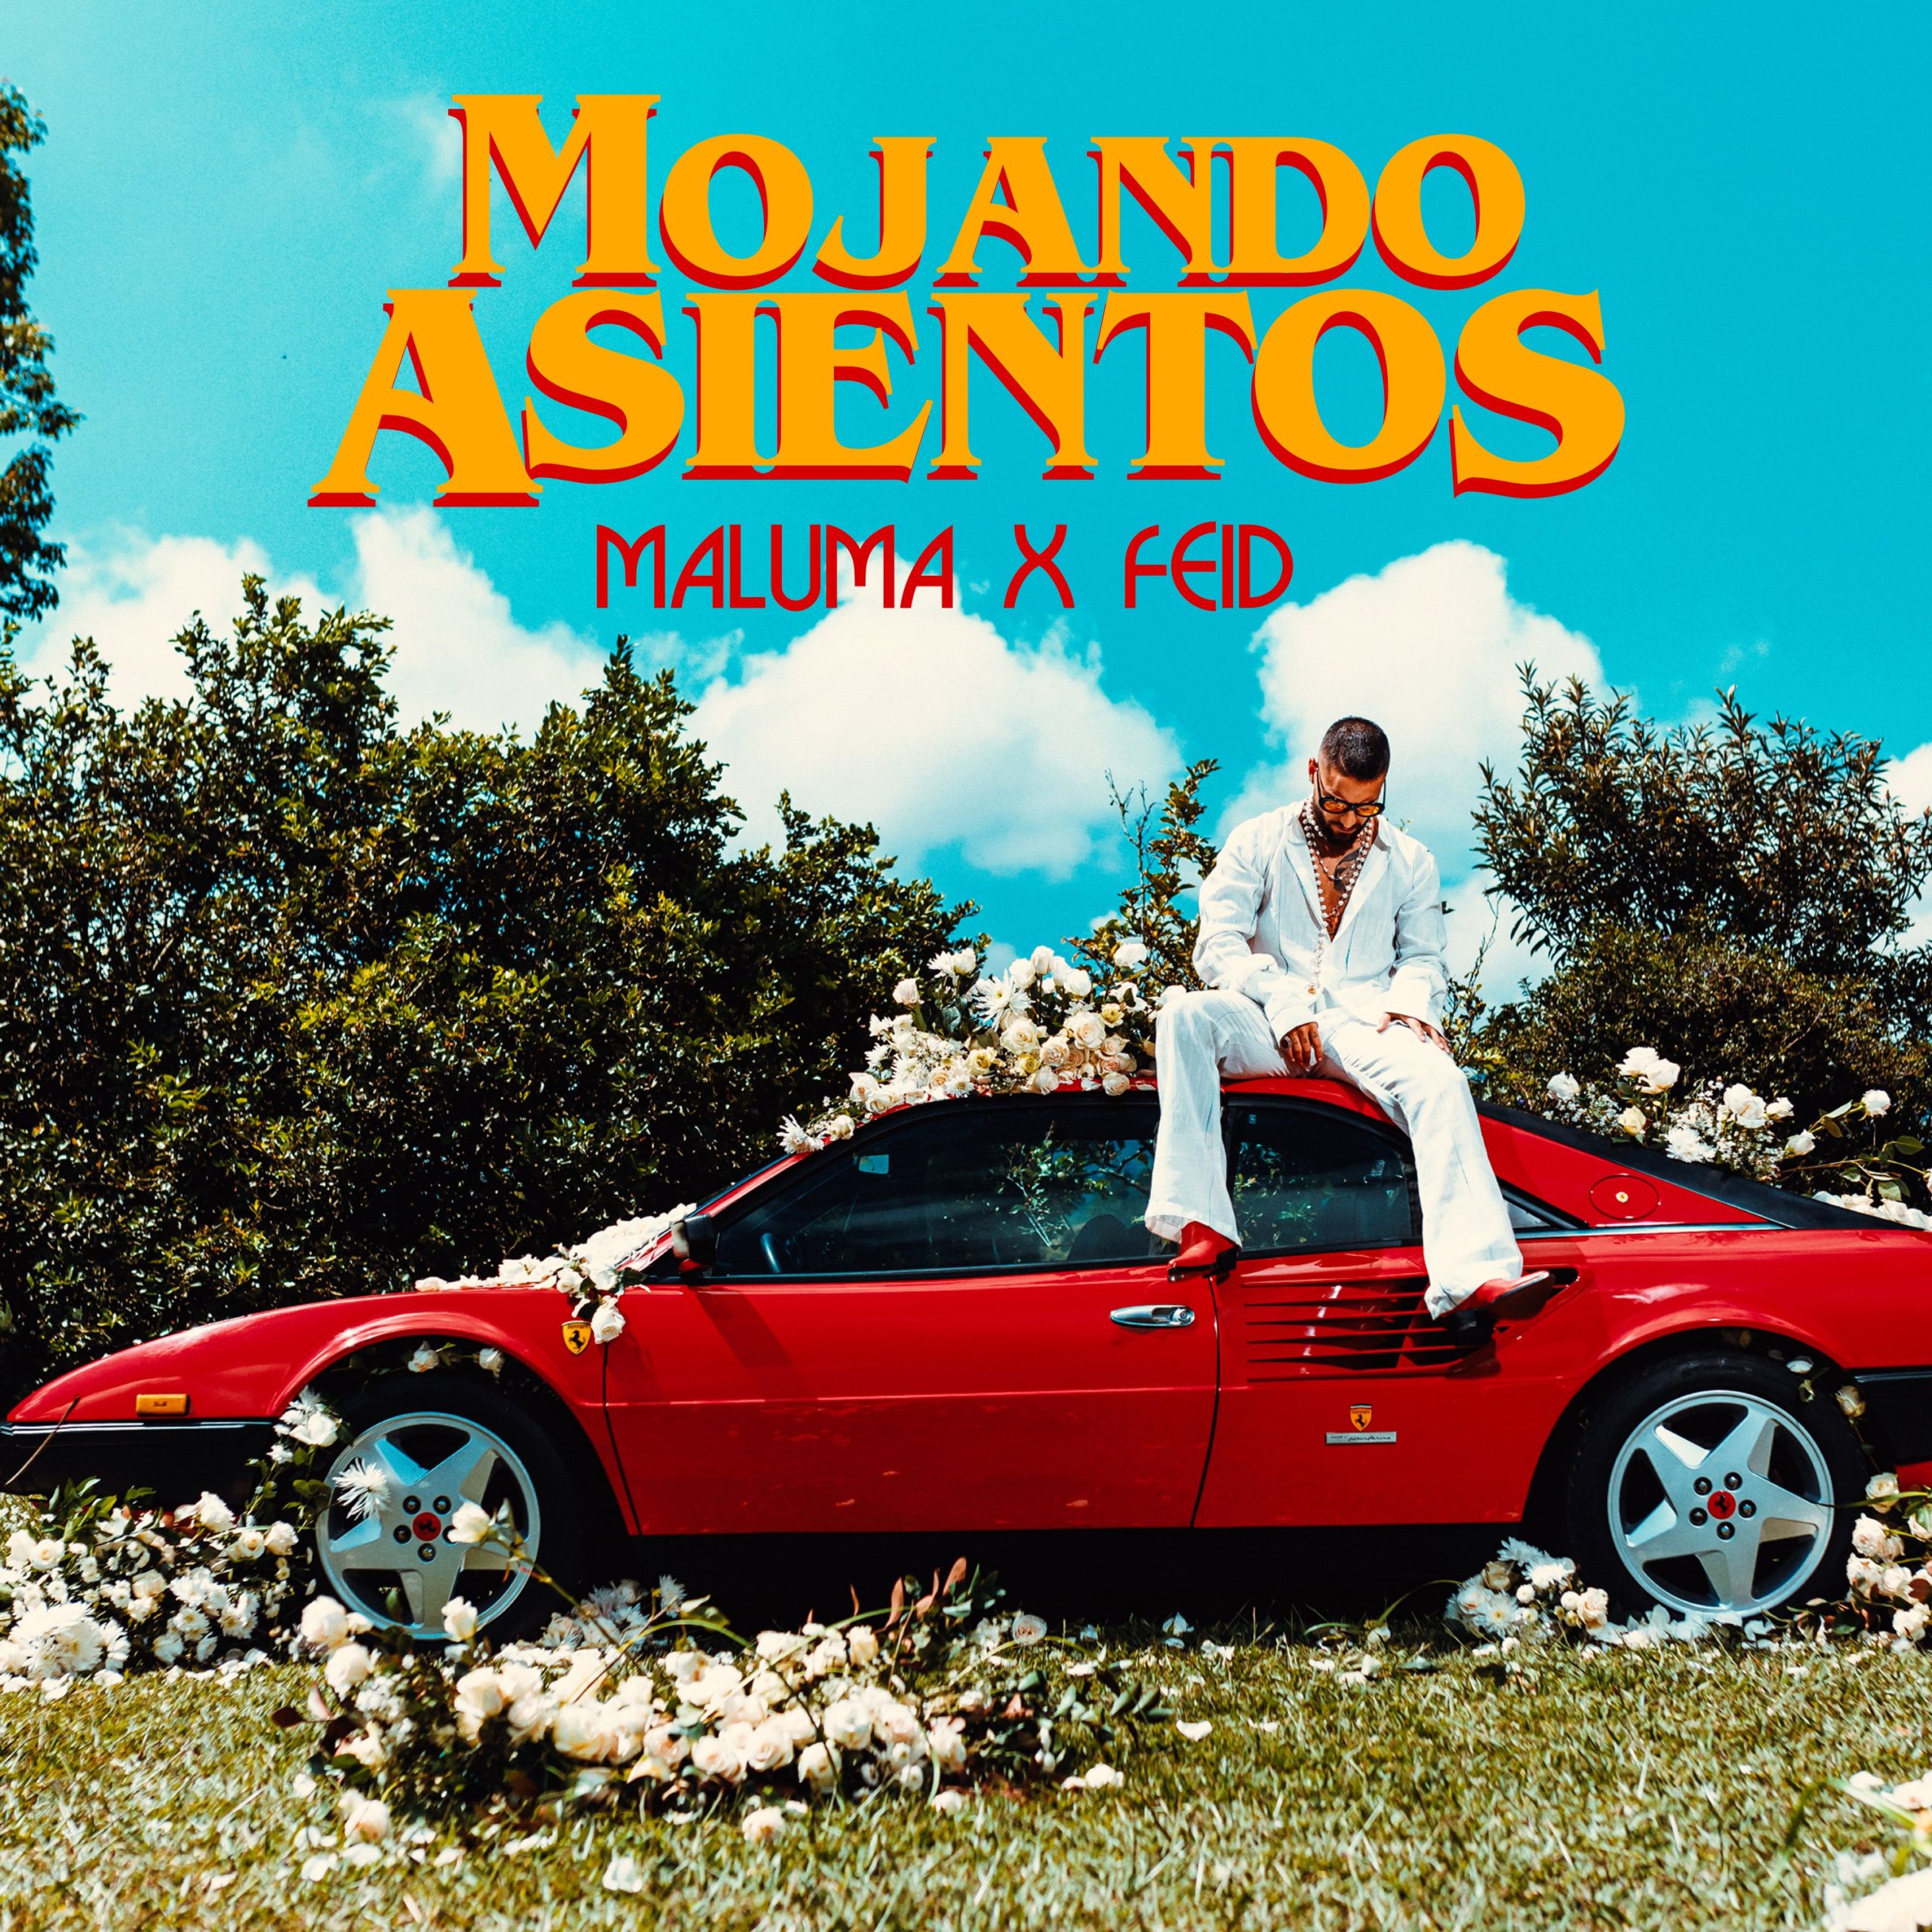 Hot & fresh. Maluma are piesă nouă în colaborare cu Feid. Ai ascultat „Mojando Asientos”?